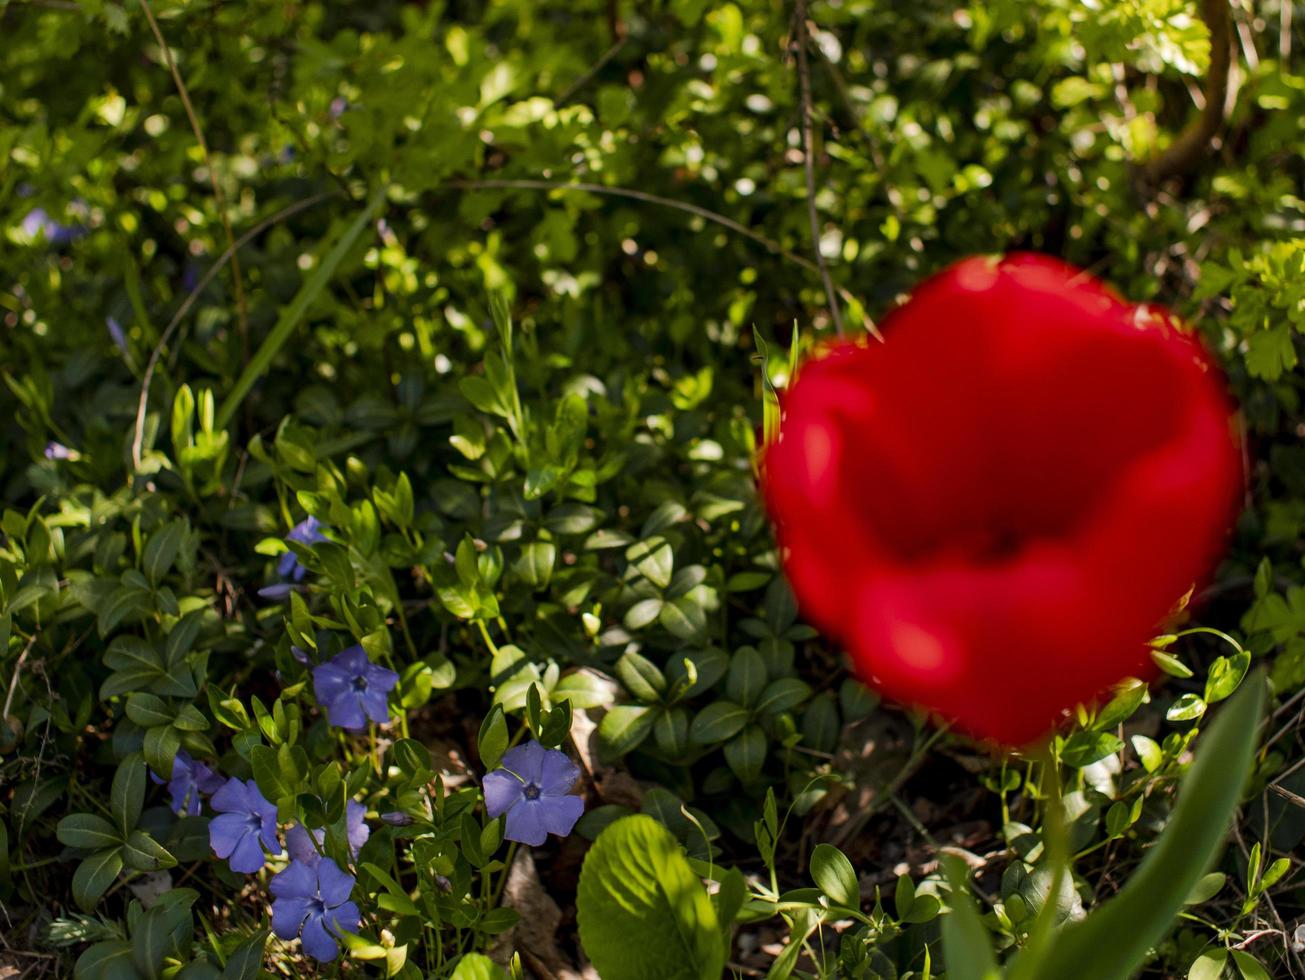 rode tulp op groen gras background.first lente bloemen foto